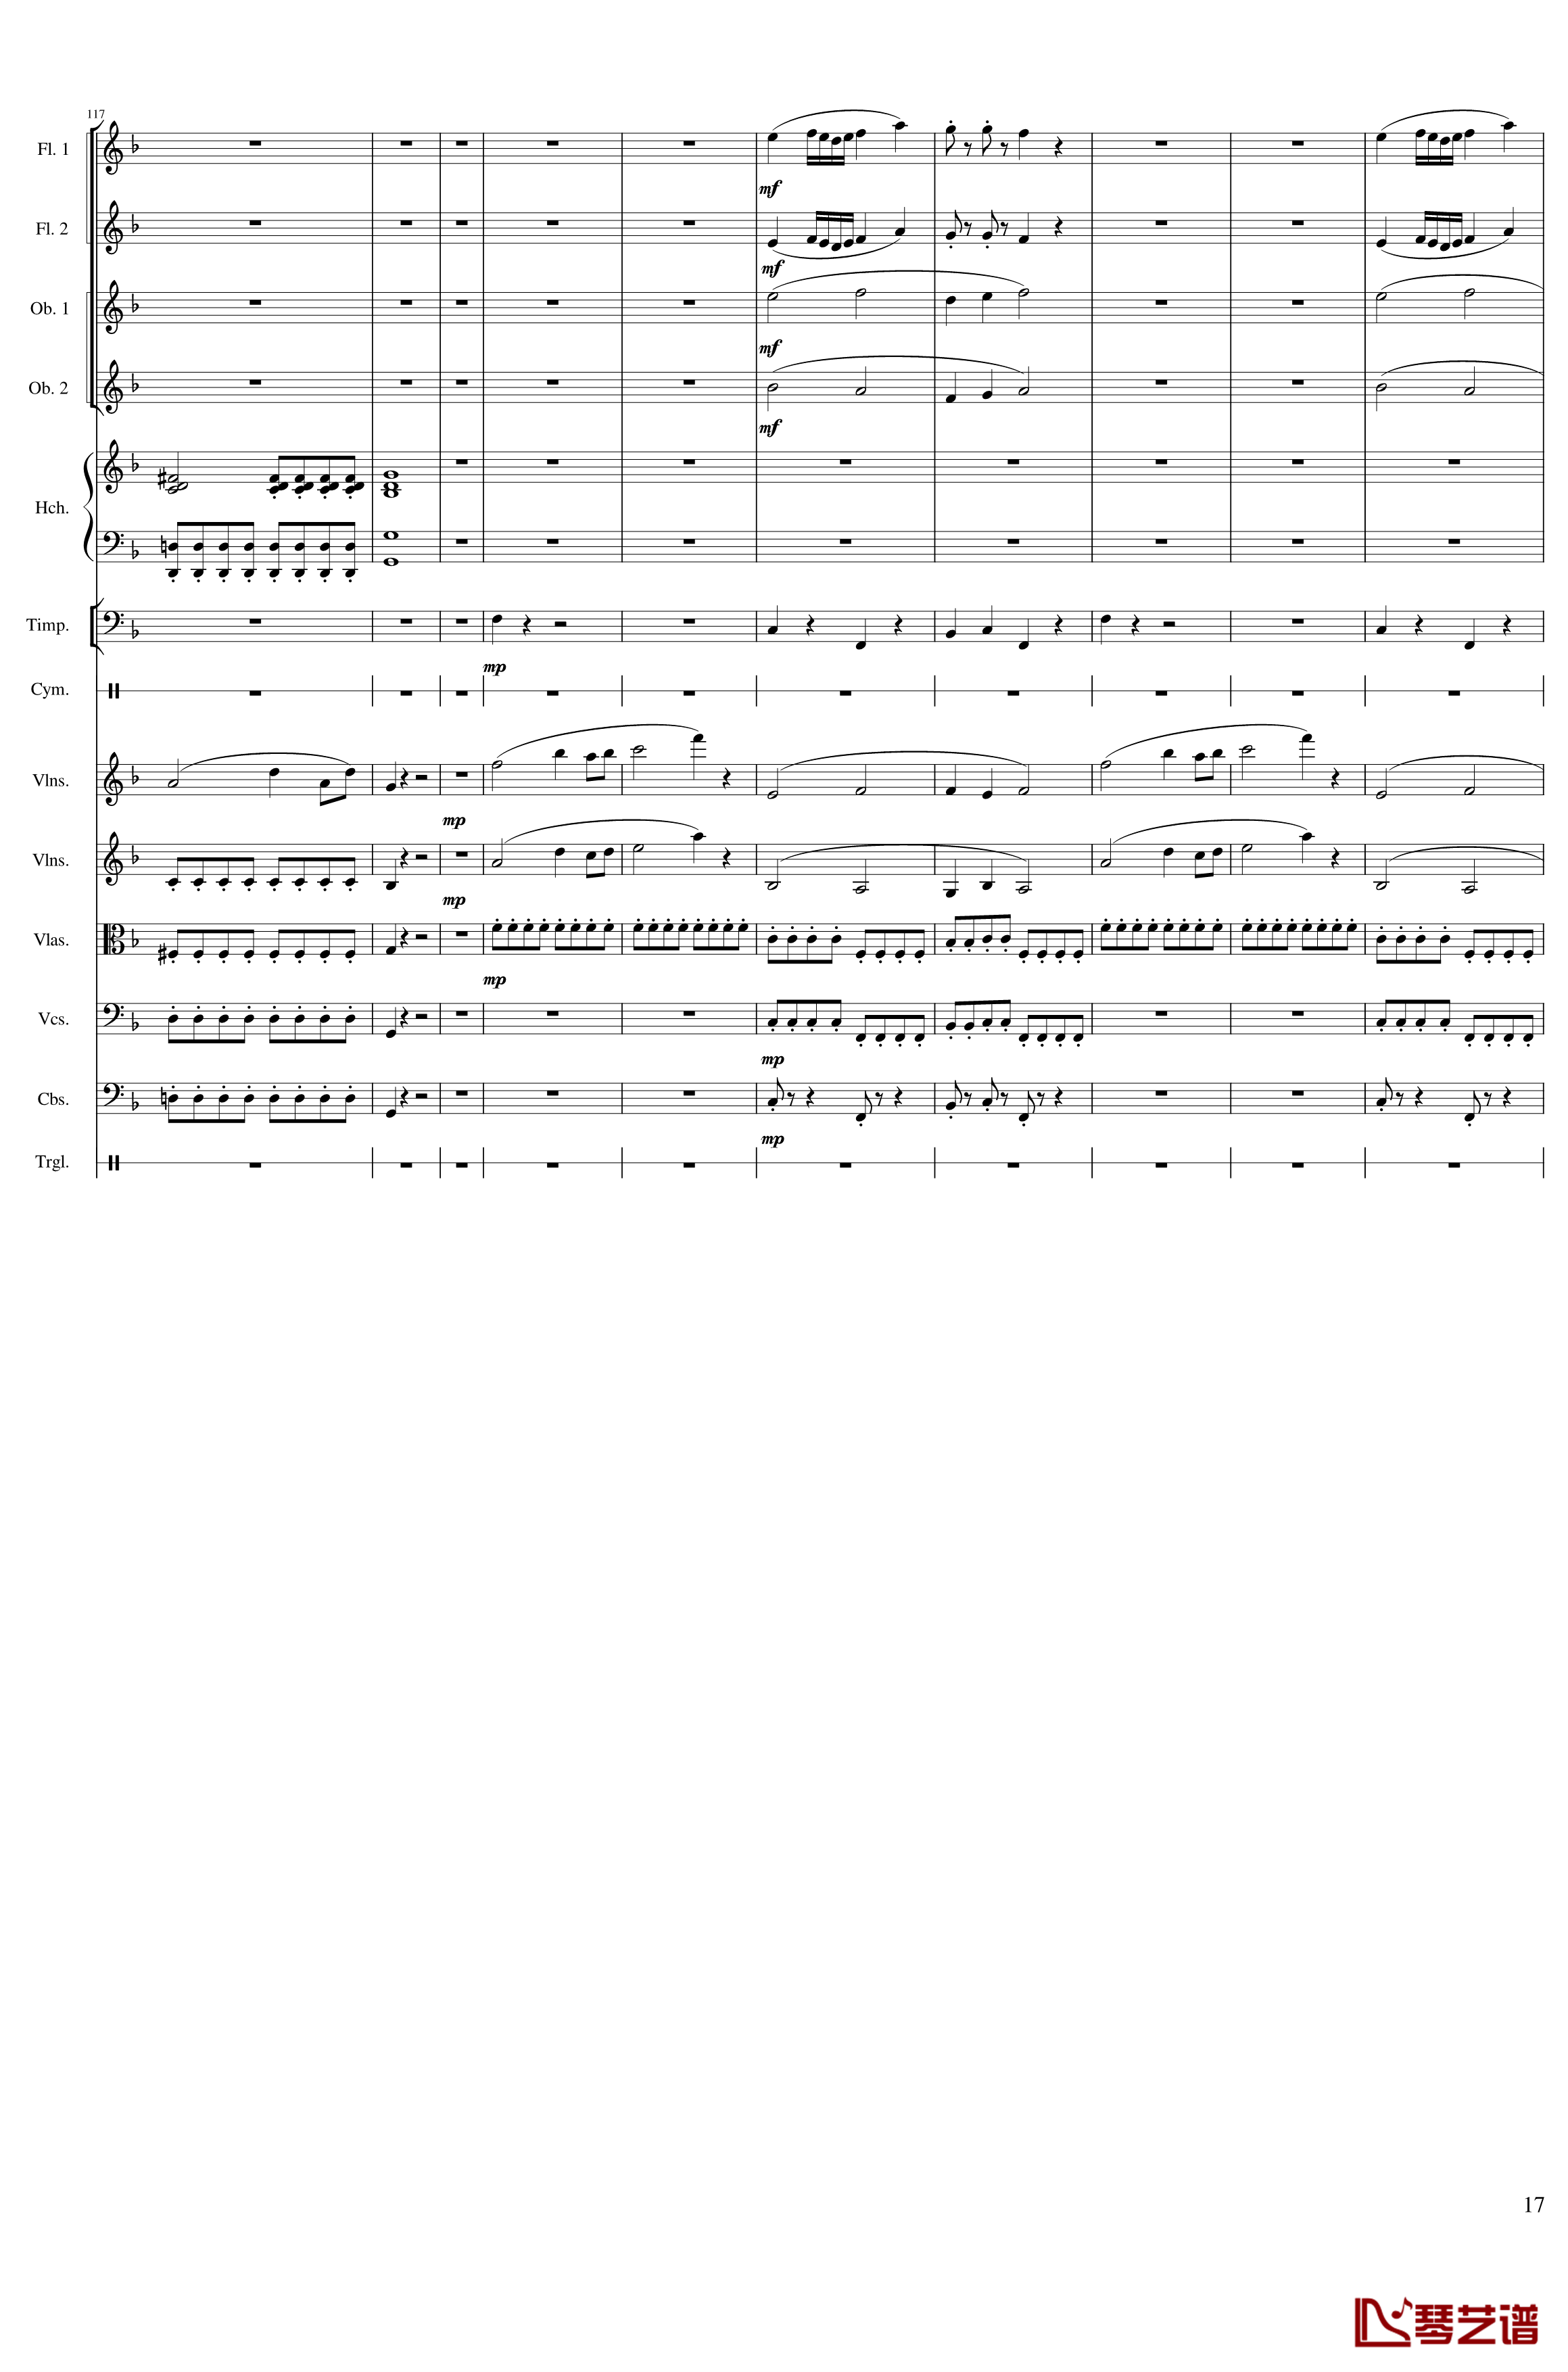 春节序曲钢琴谱-作品121-一个球17